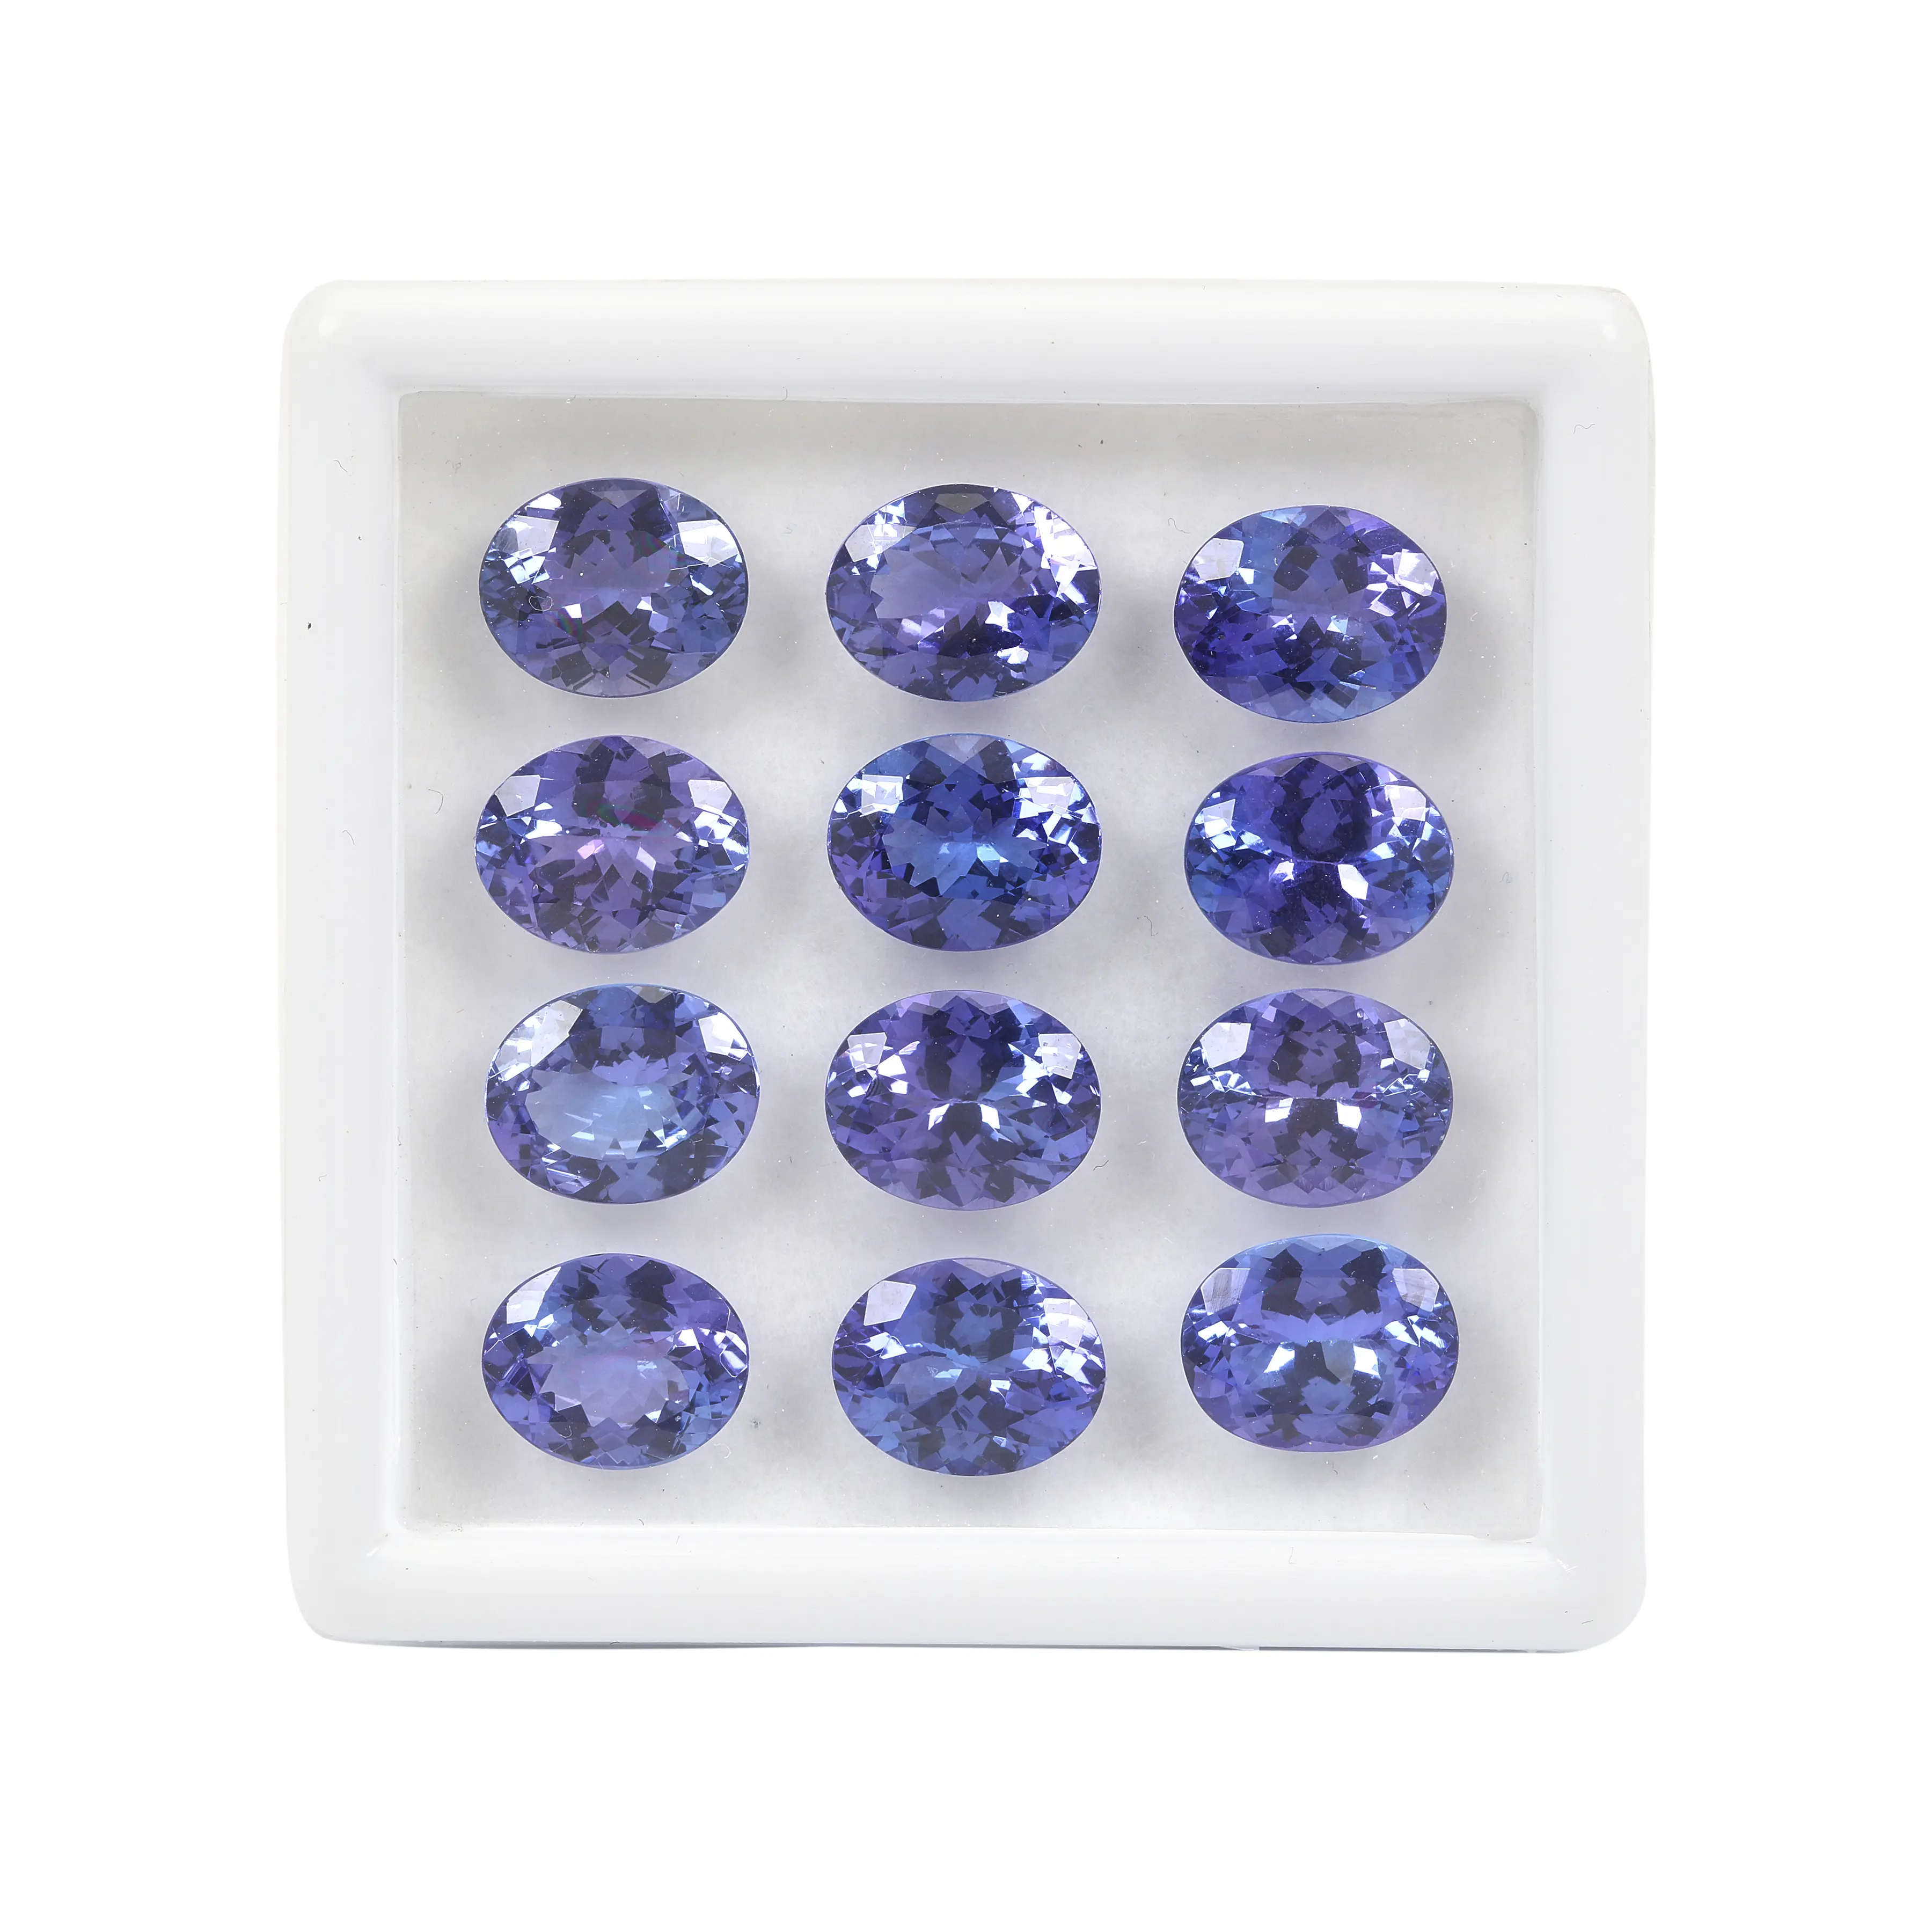 Certificato AAA + Tanzanite ovale 10x8mm taglio brillante pietra sciolta pietra preziosa blu naturale di qualità genuina per fare gioielli